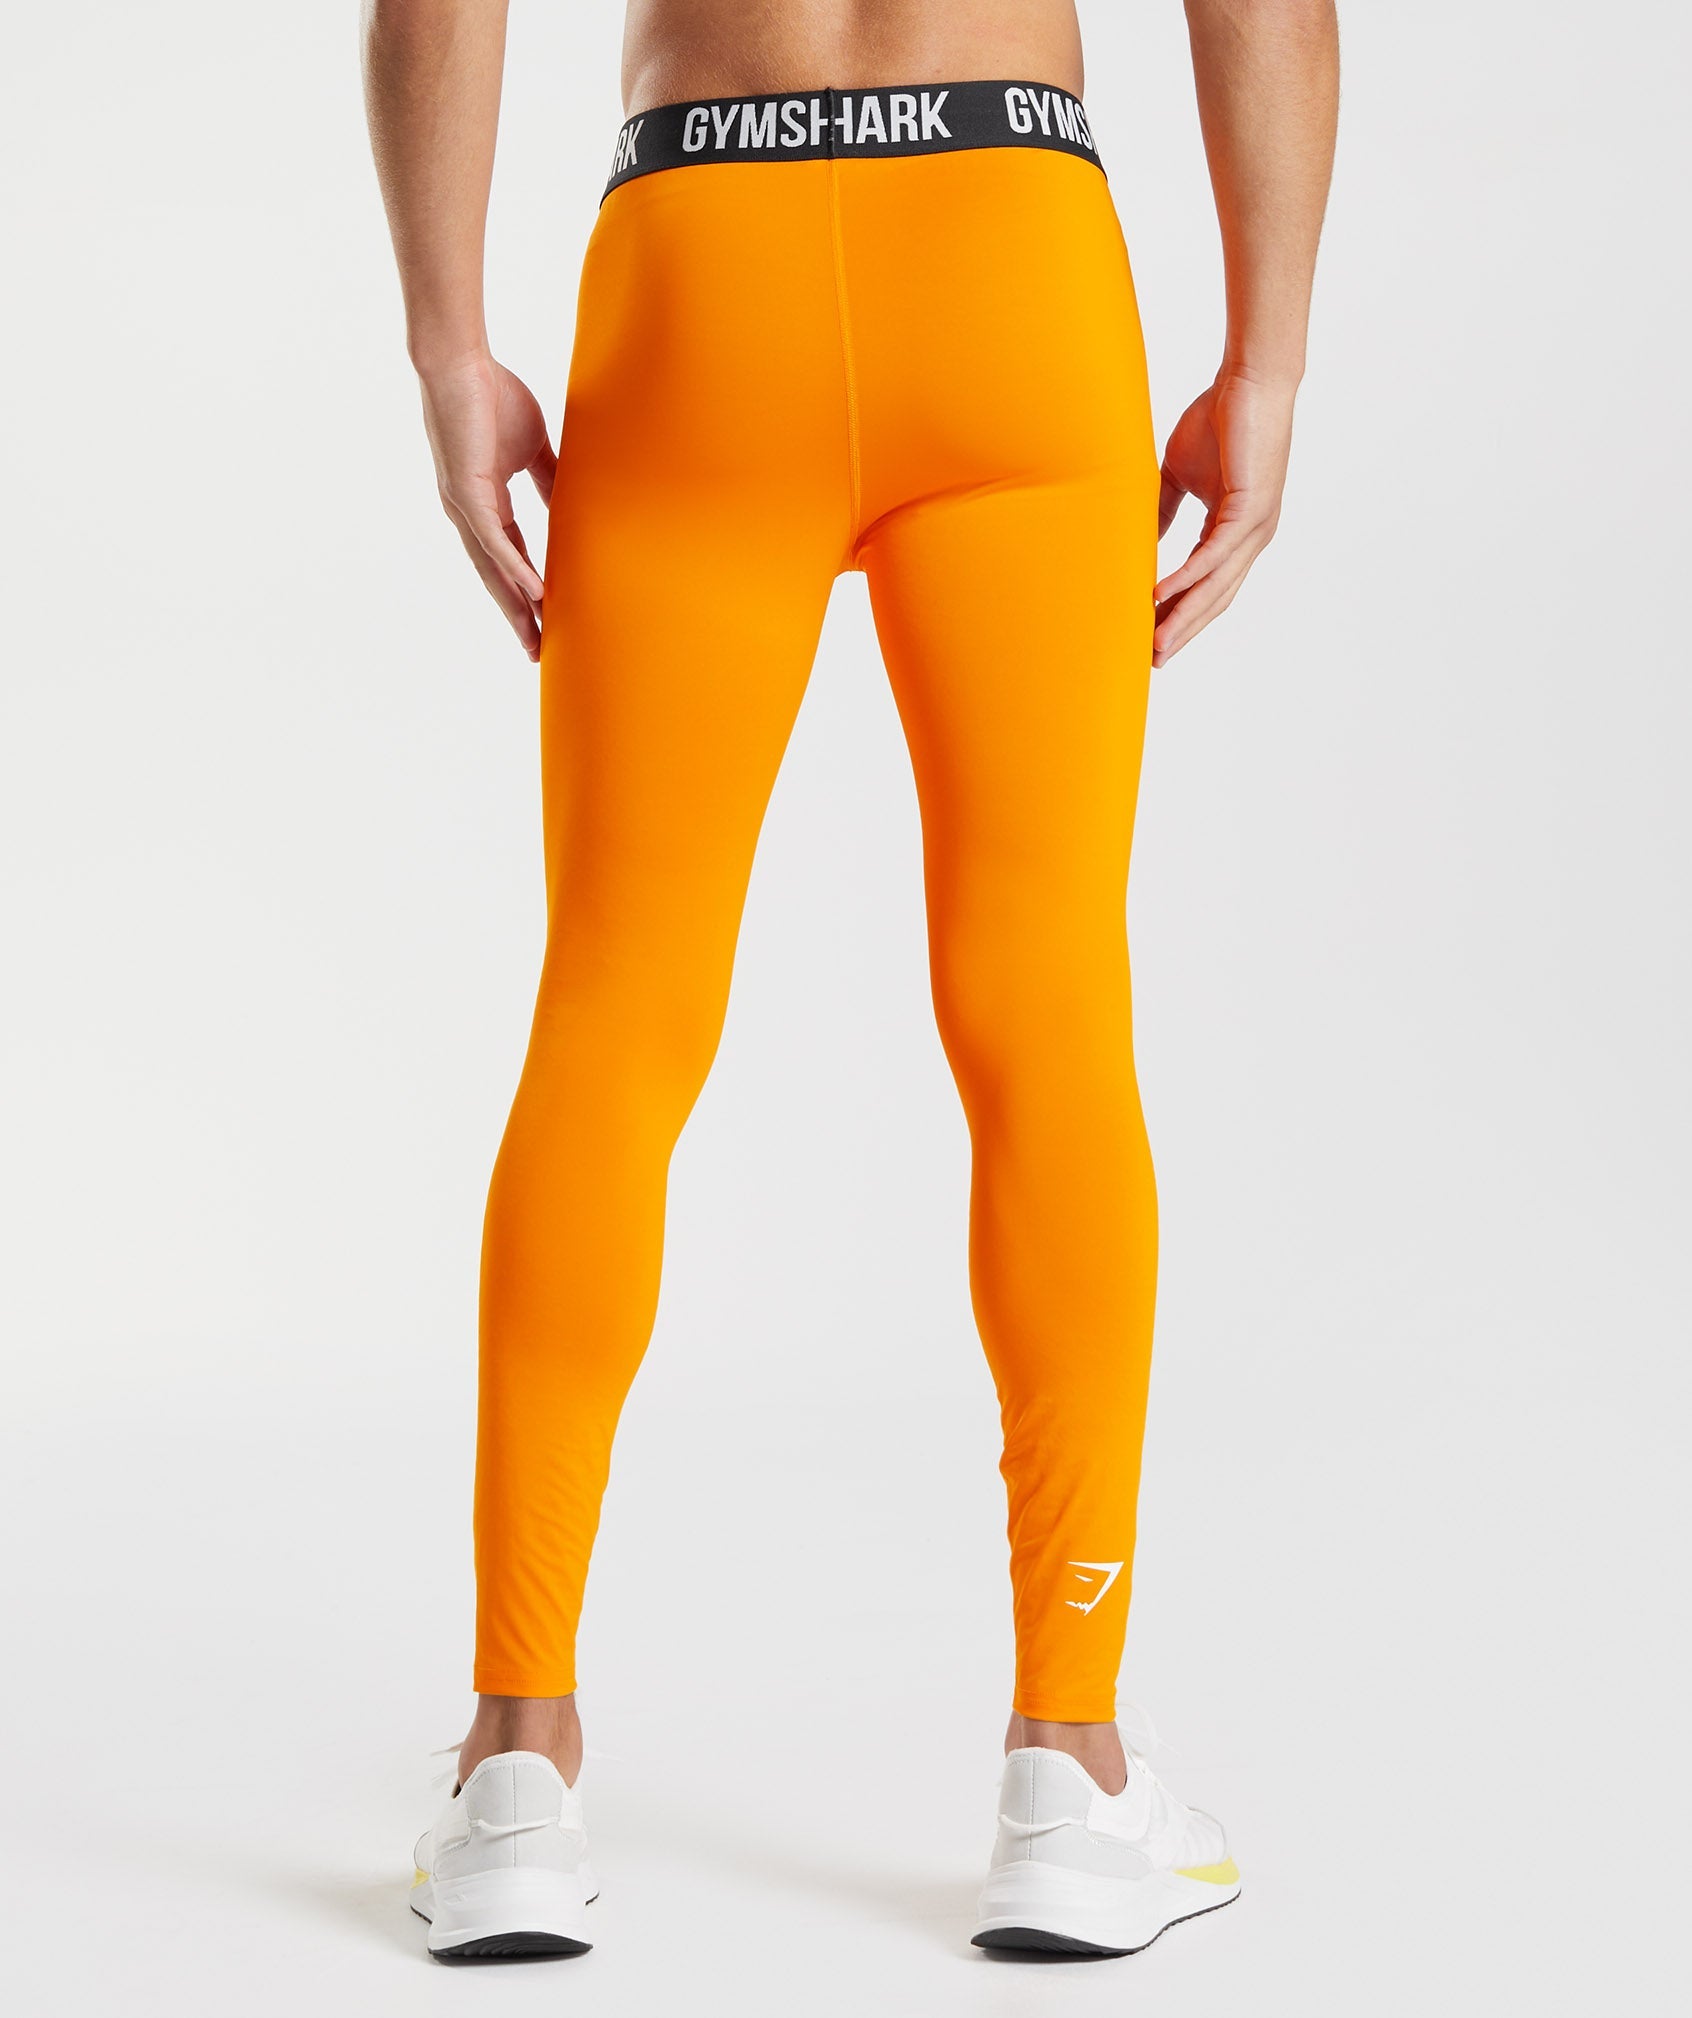 Gymshark Studio Leggings - Orange